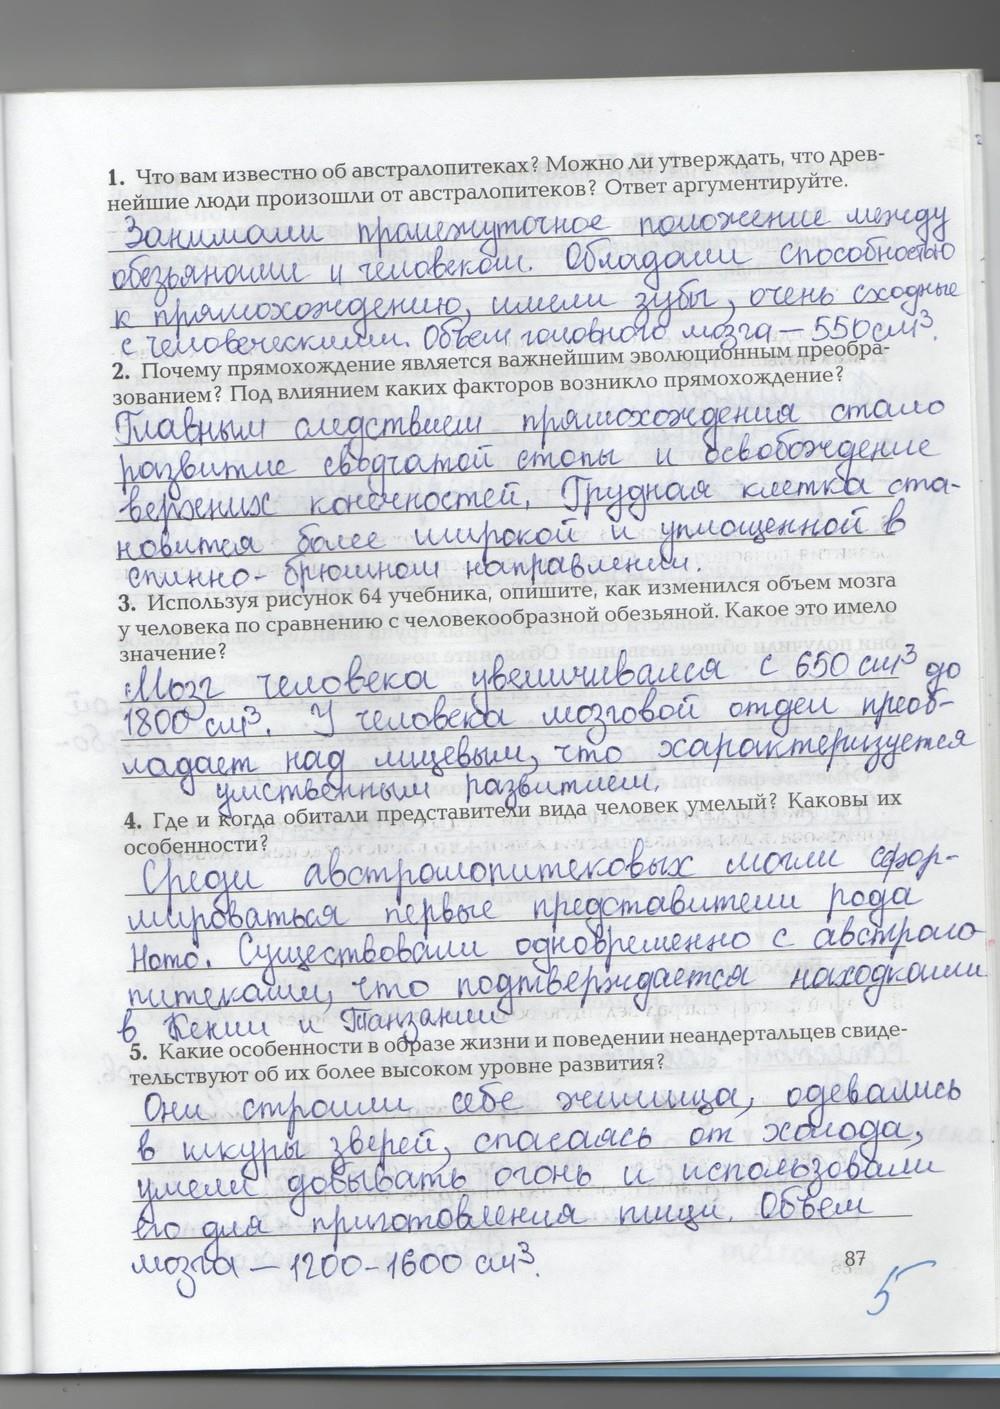 гдз 9 класс рабочая тетрадь страница 87 биология Козлова, Кучменко